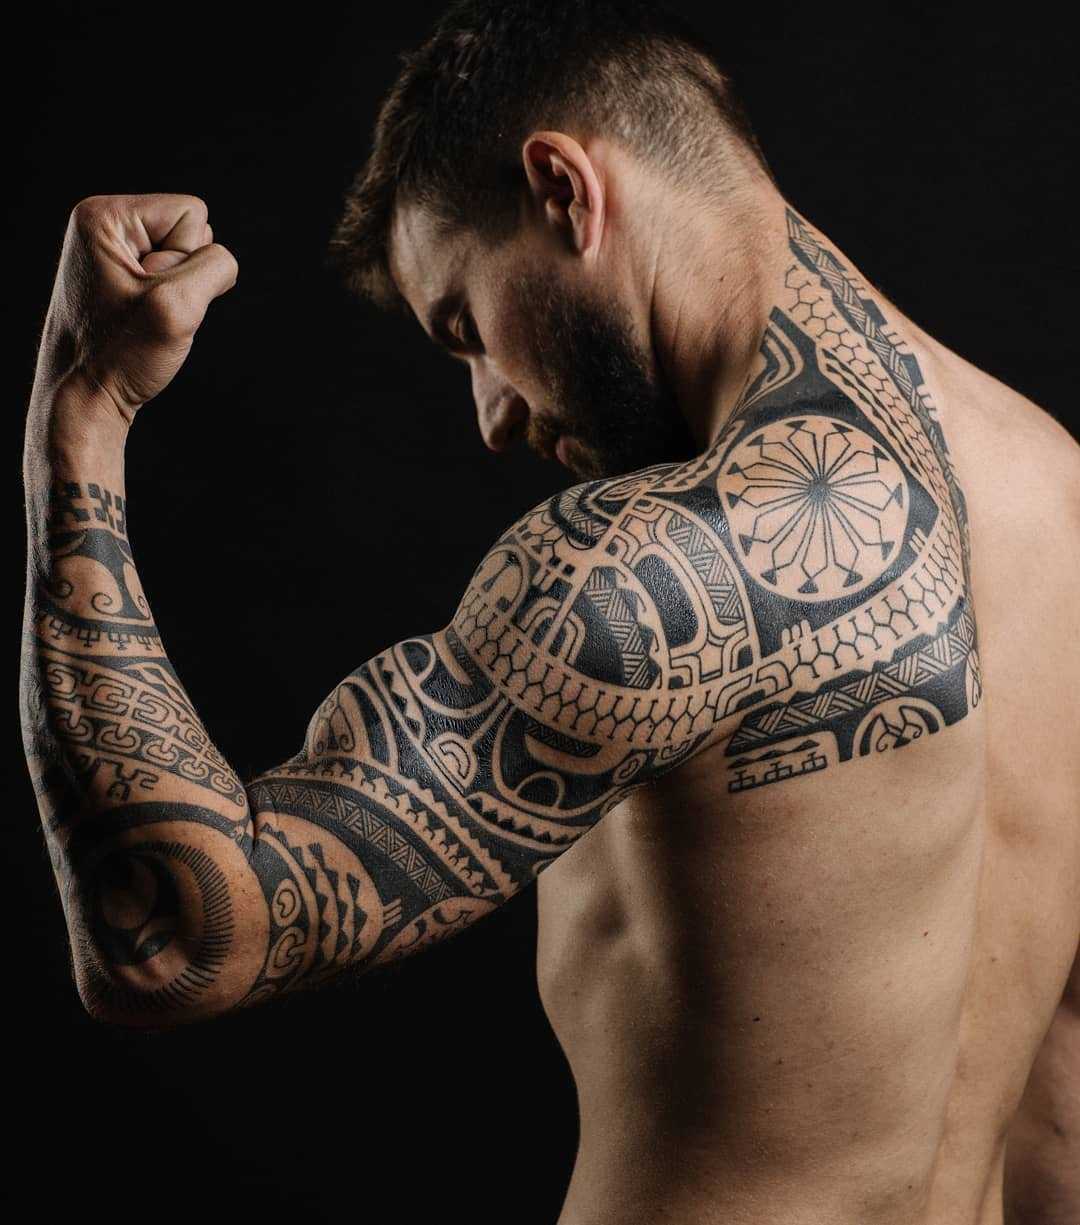 Самые популярные тату 100 фото для девушек и мужчин Популярные тату надписи, цветы, символы, животные Популярные тату на руке, плече, шее, ноге, груди, запястье Фото, эсизы, значение популярных женских и мужских татуировок